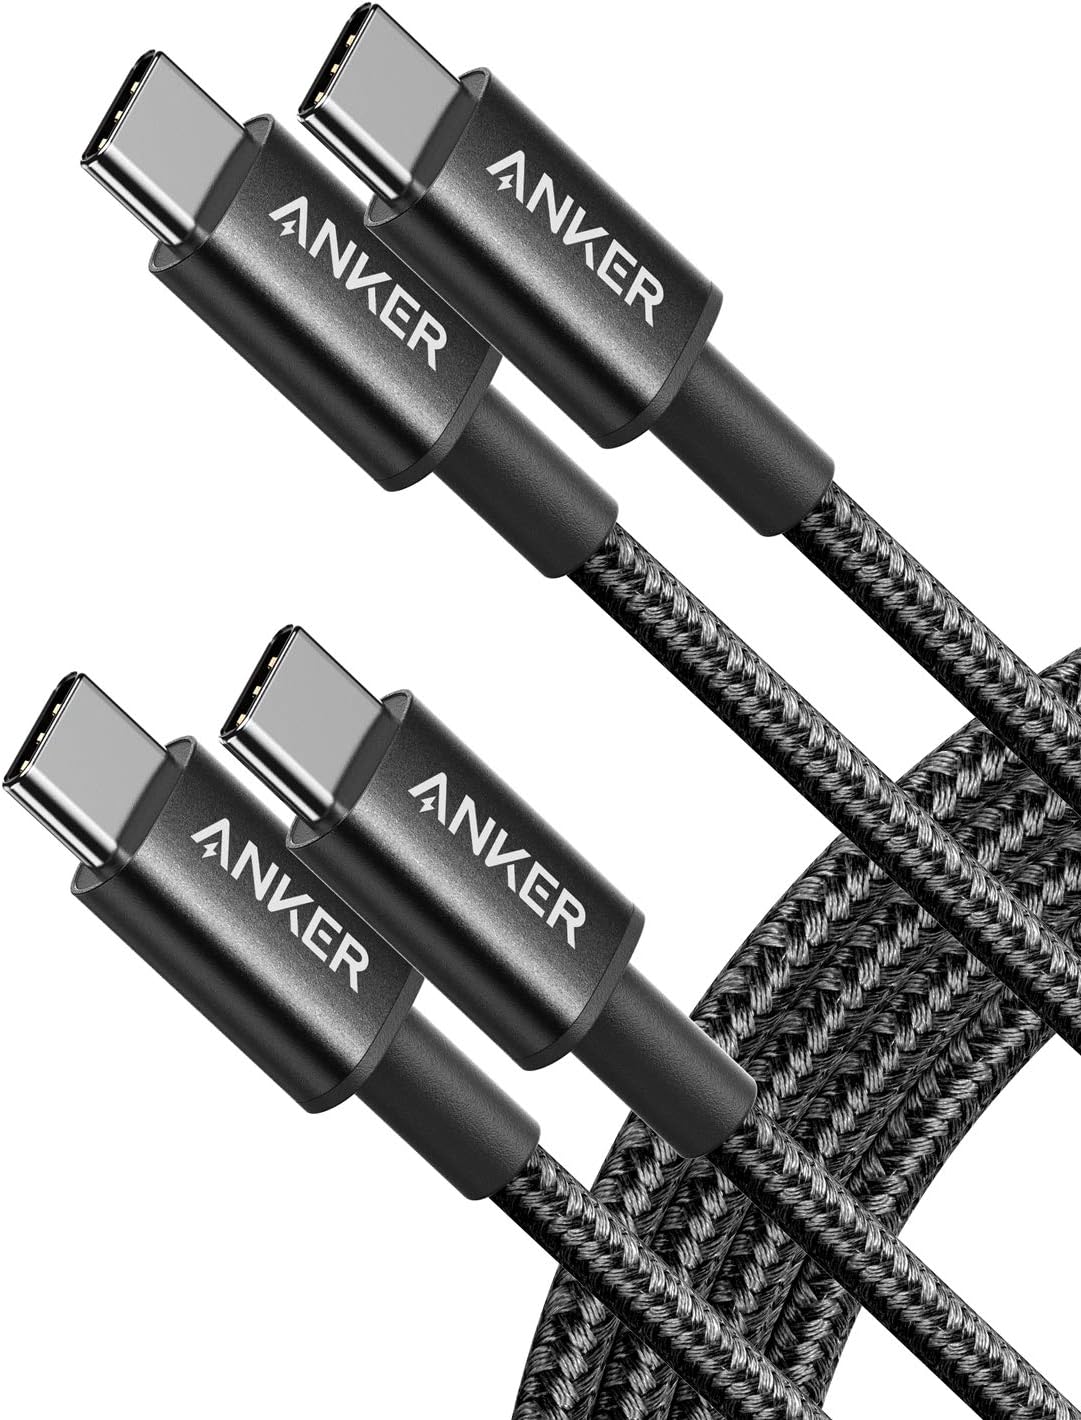 Anker New Nylon Series 3 USB-C vers USB-C, pack de 2